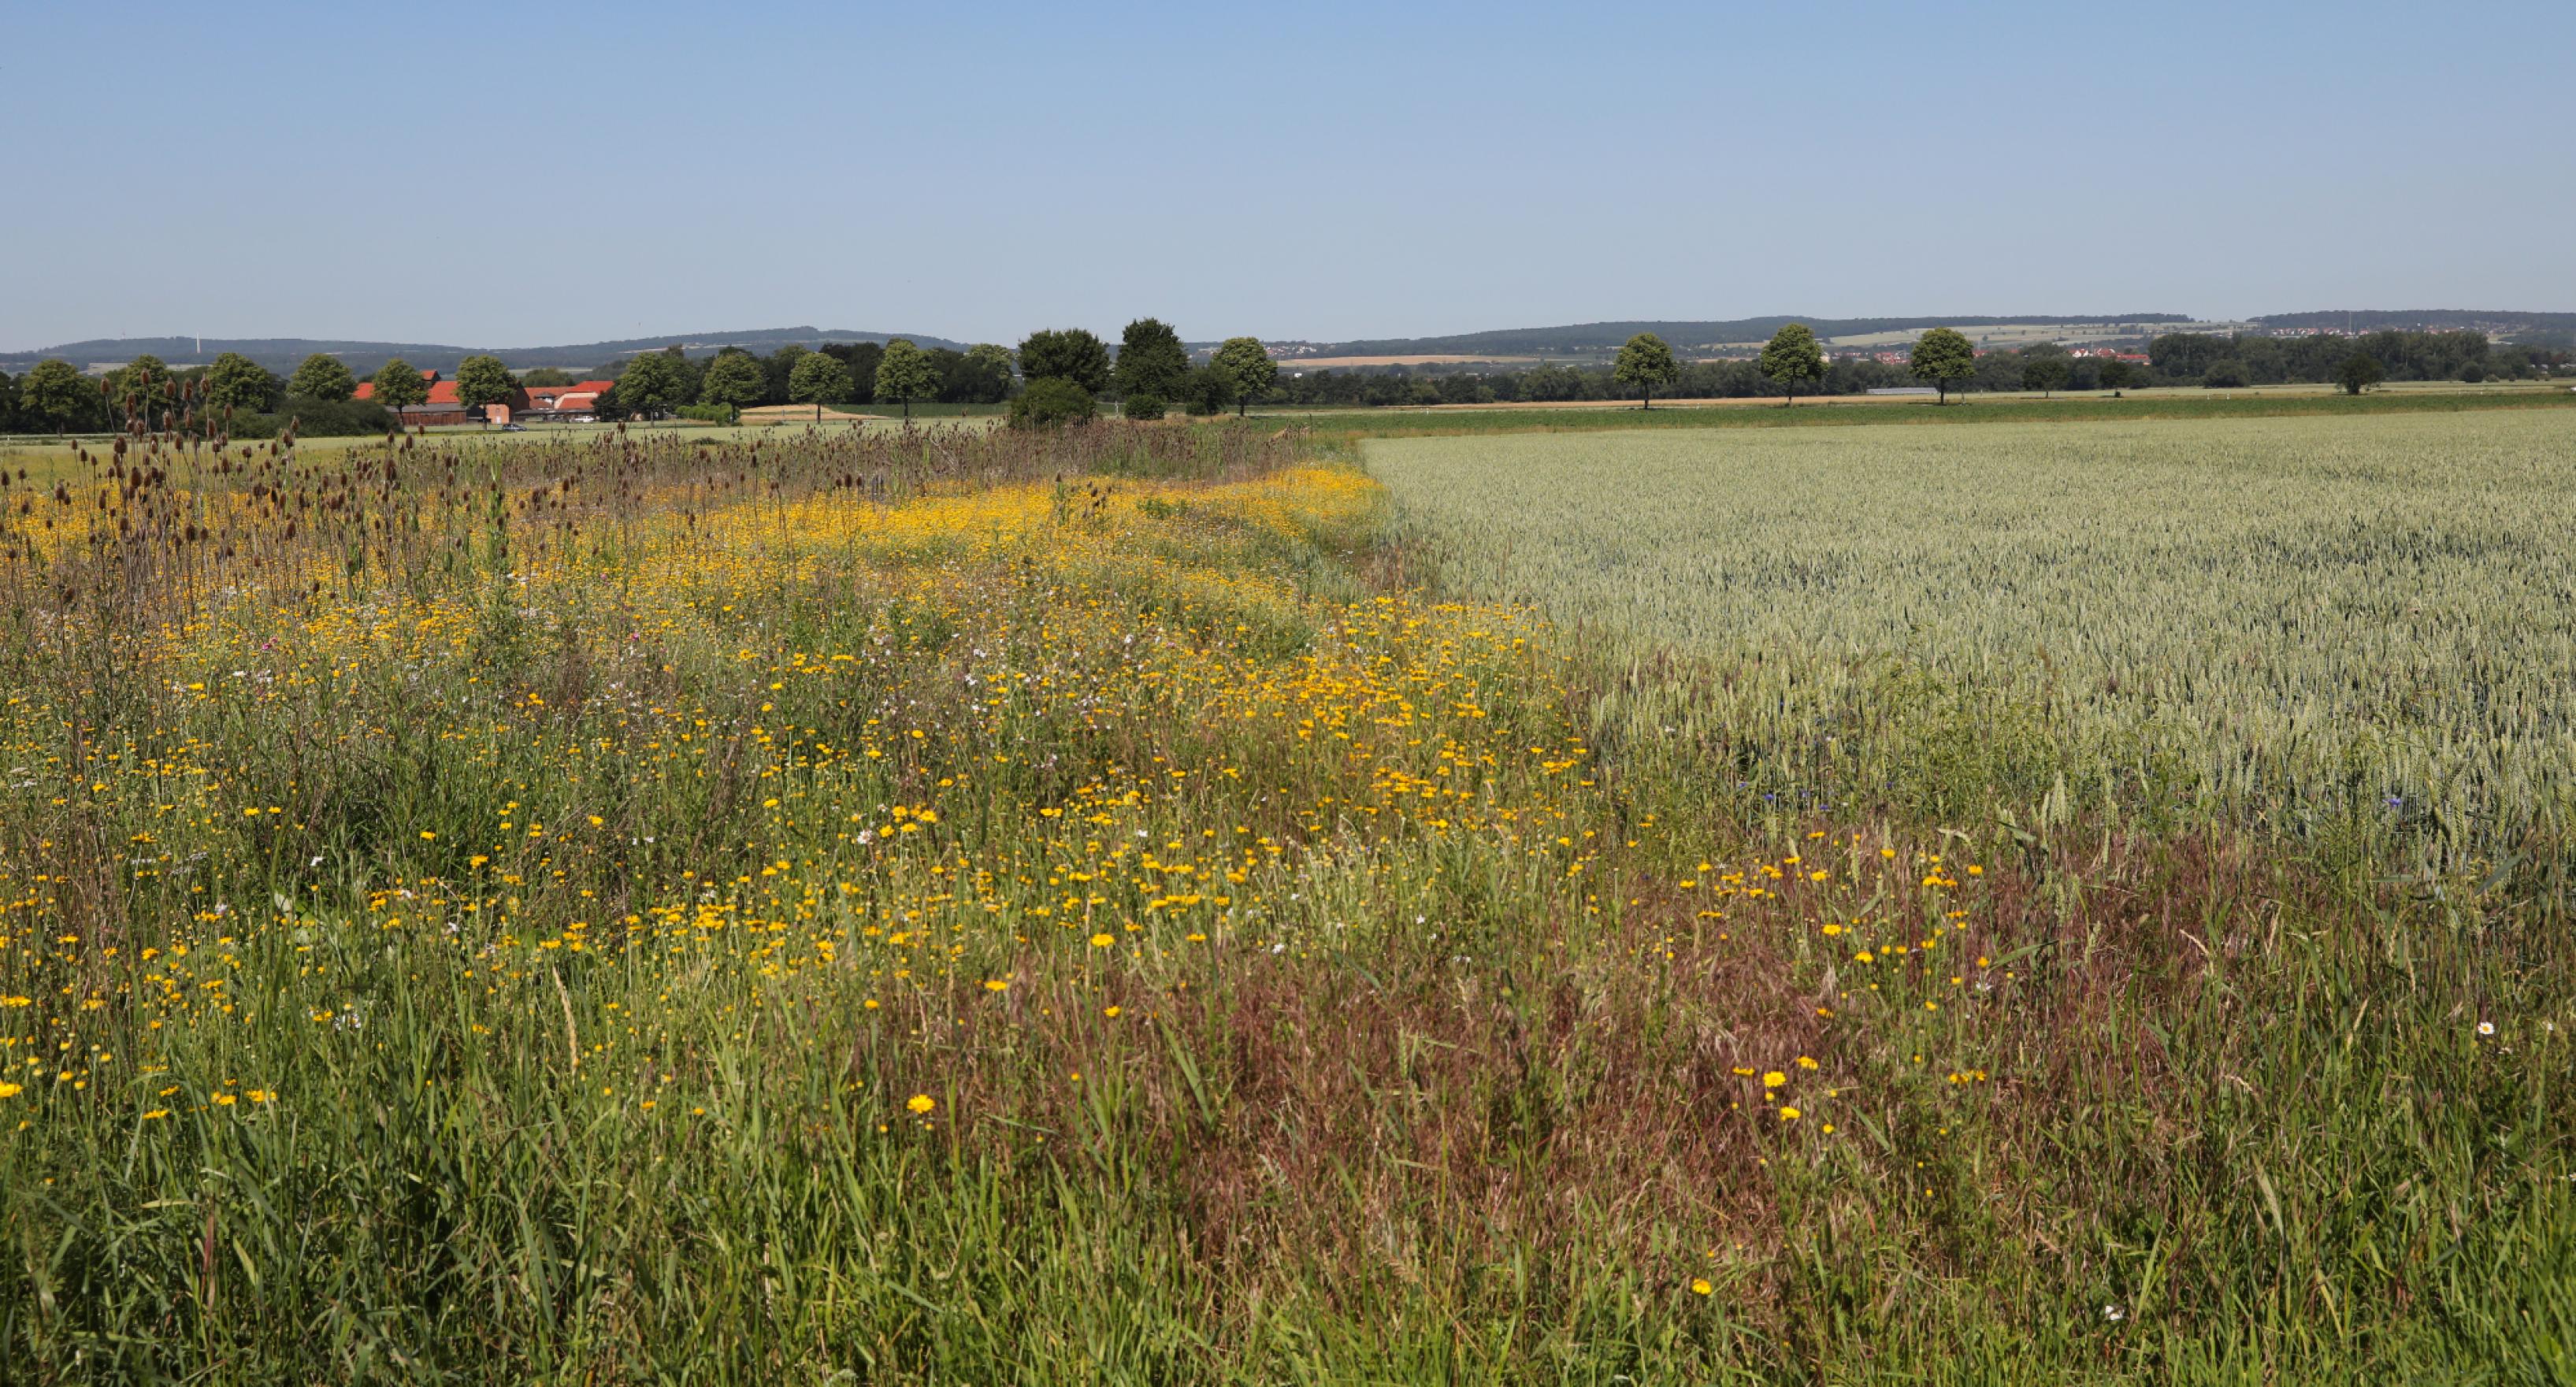 Der Übergangsbereich zwischen Schutzfläche und Landwirtschaftsfläche. links Rebhuhnschutzfläche, rechts ein Getreidefeld.